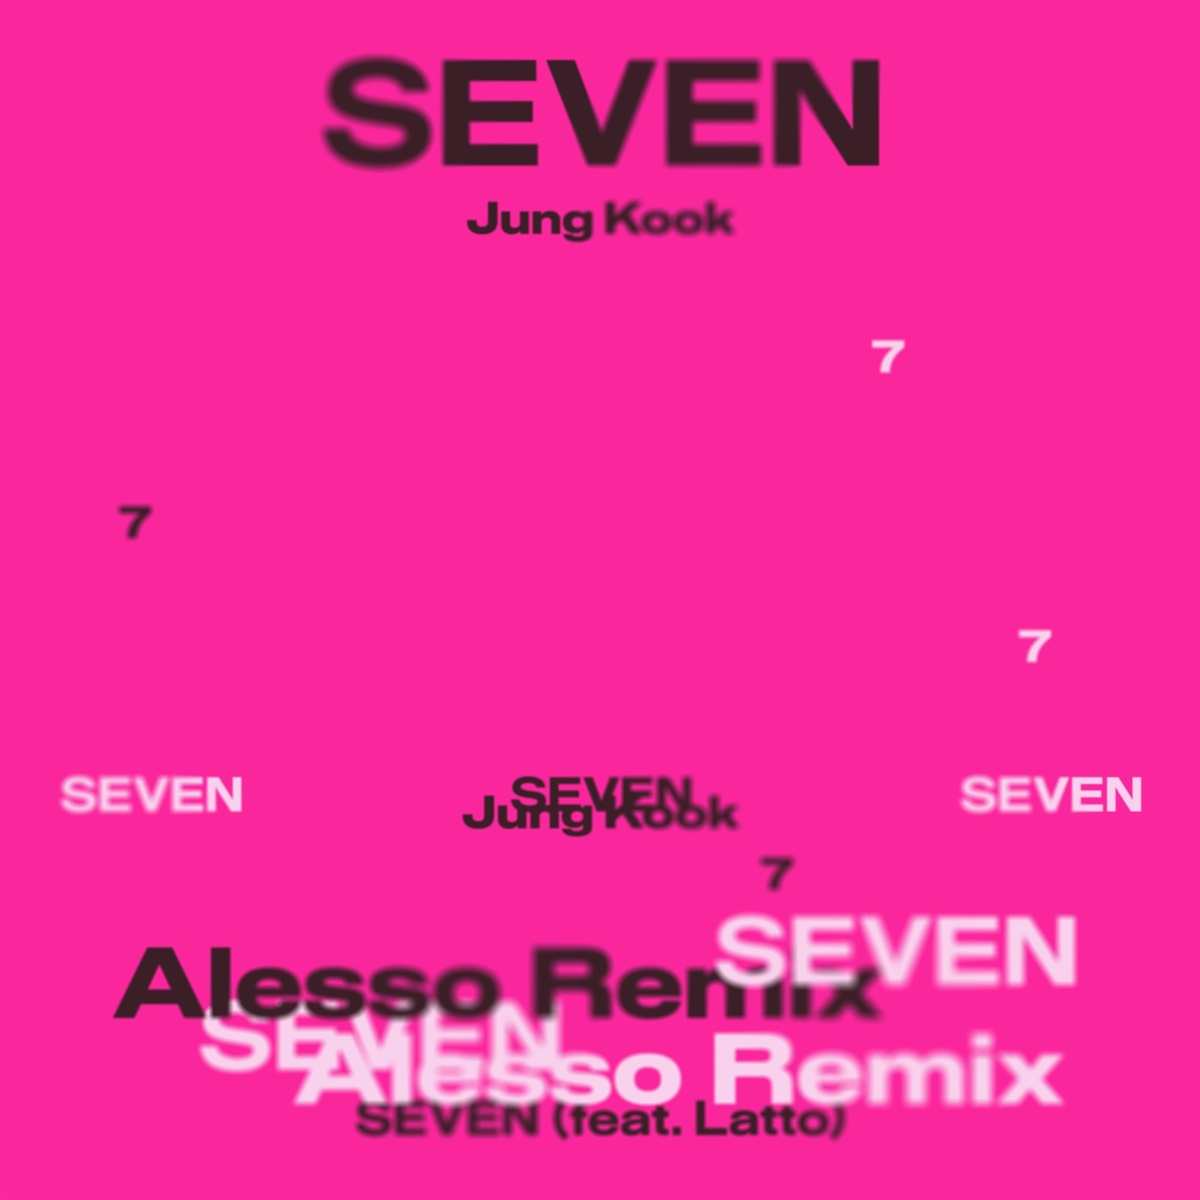 「Seven(feat. Latto) - Alesso Remix」